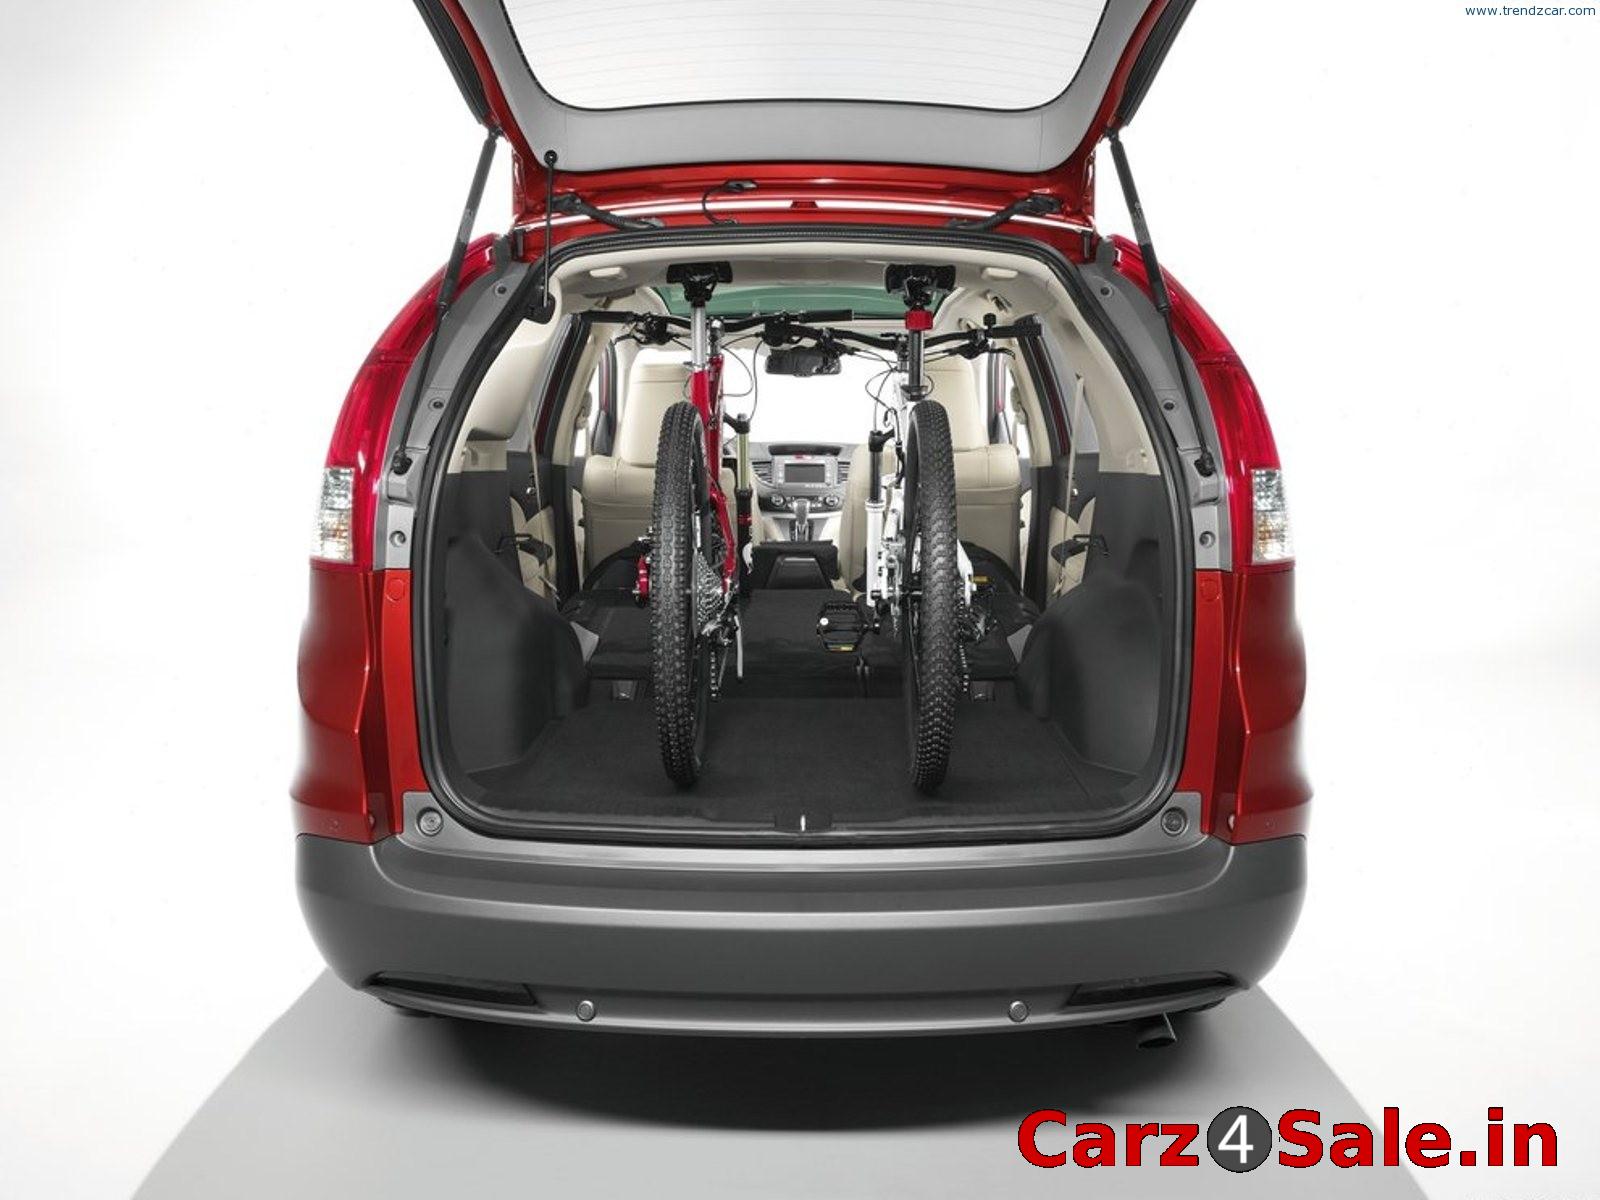 2013 Honda CR-V bootspace